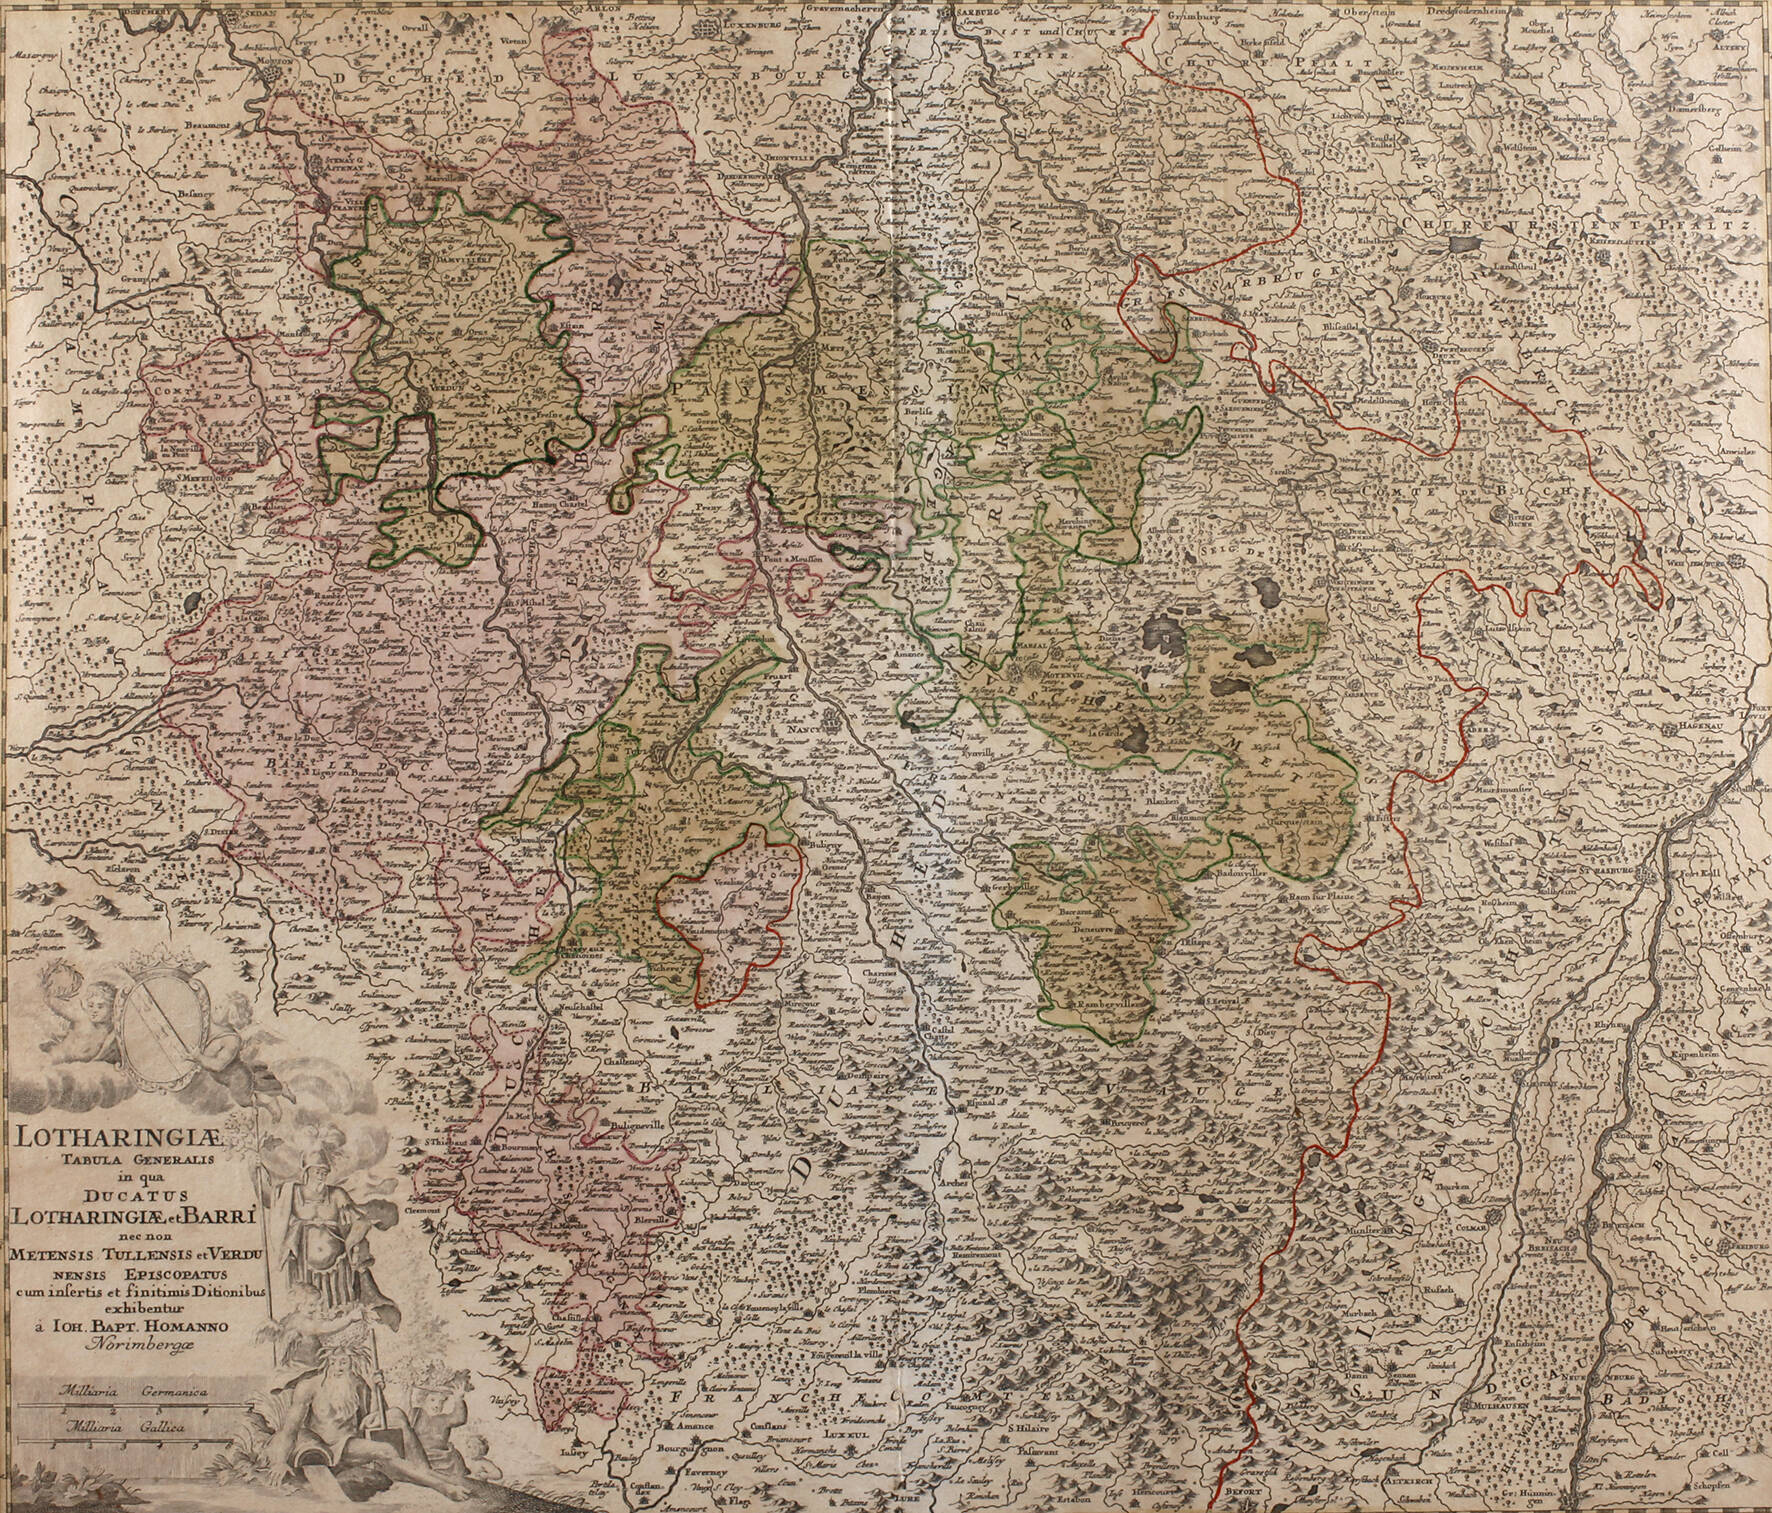 Johann Baptist Homann, Karte Lothringen